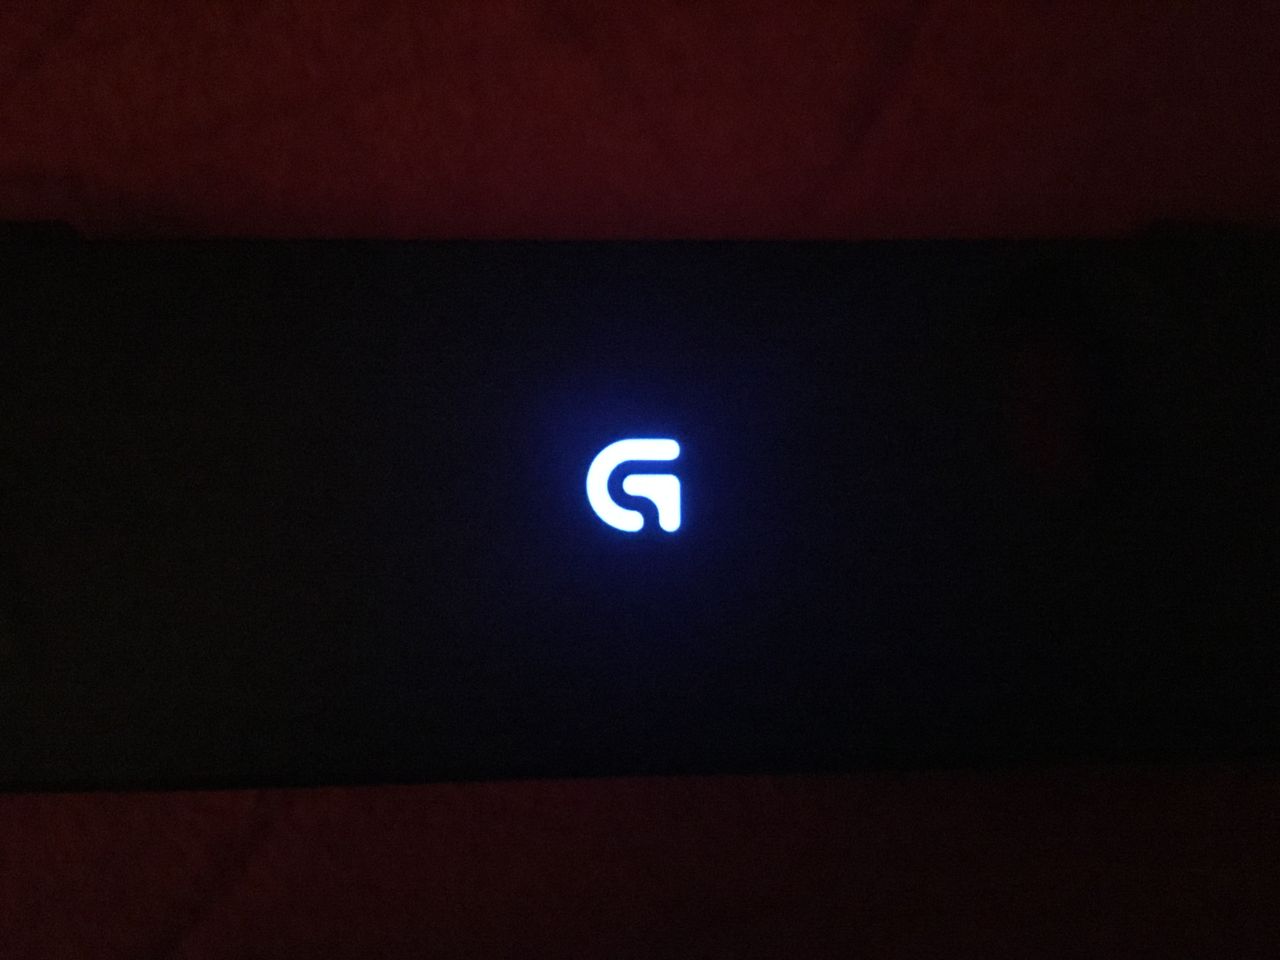 Logo "G" z tyłu pada pulsuje podczas jego ładowania